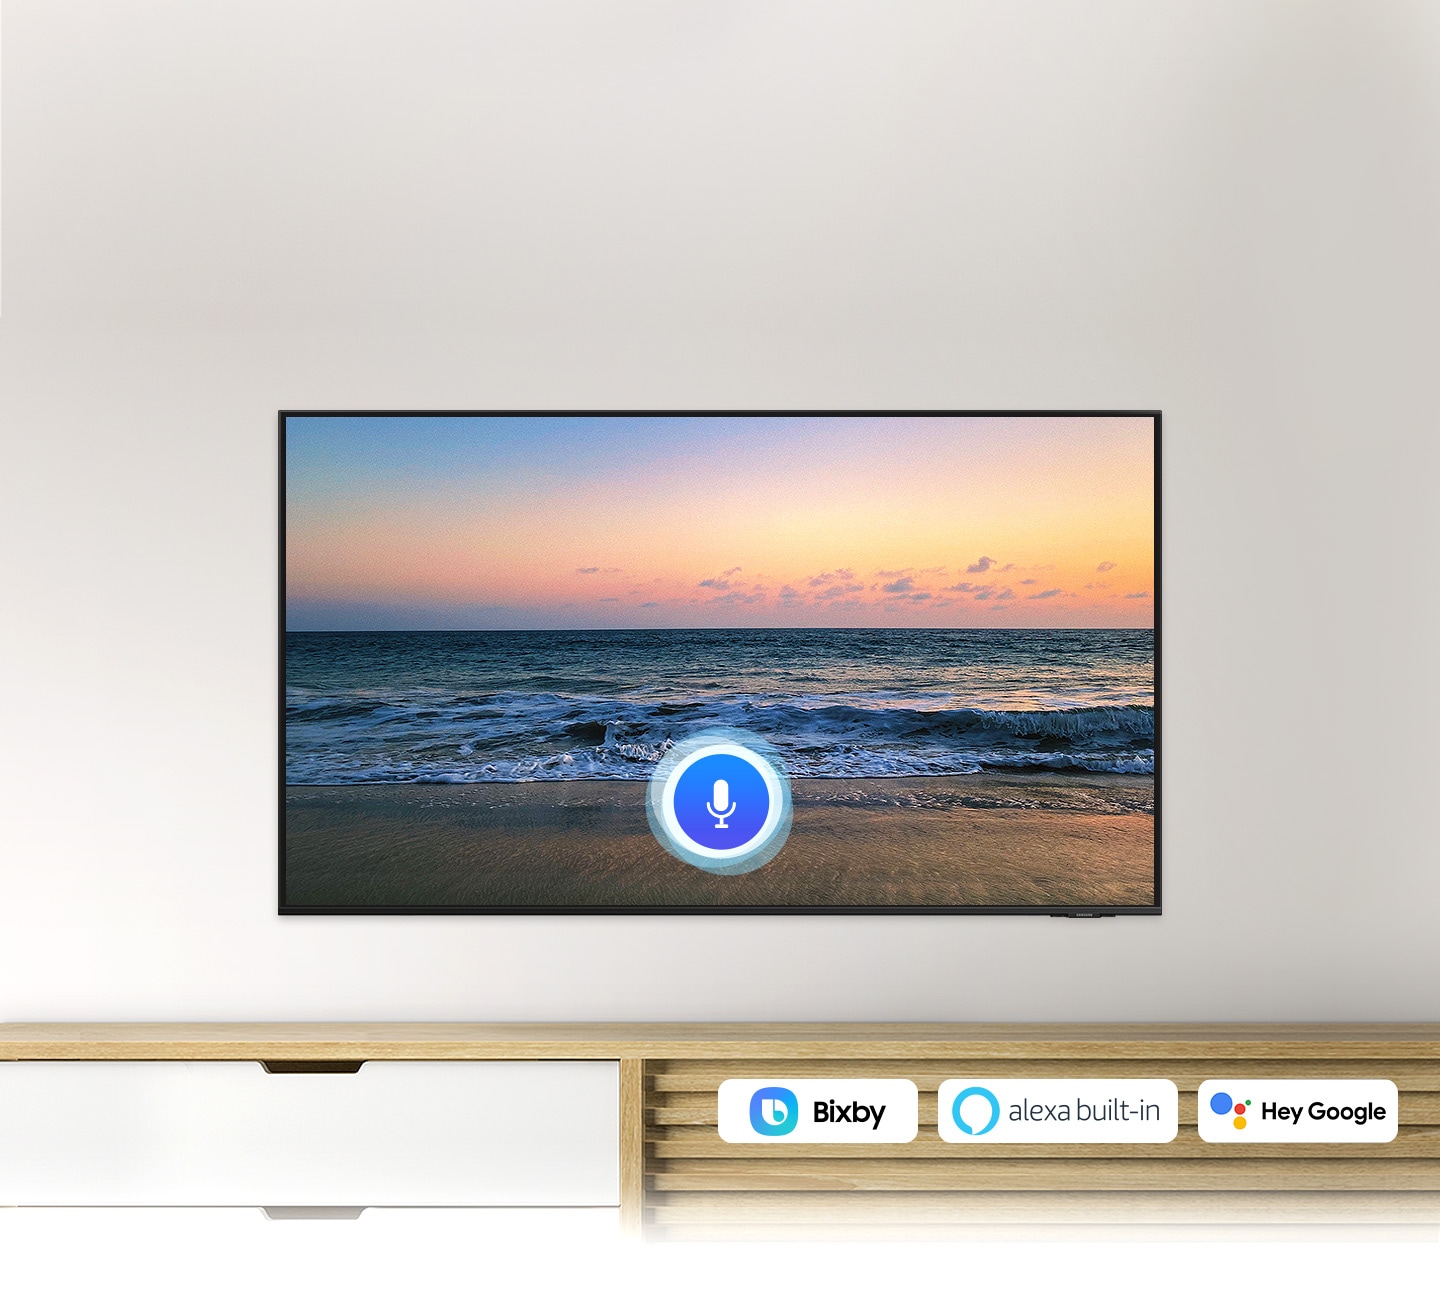 Ikona mikrofona prekriva sliku ekrana TV-a za zalazak sunca na plaži, pokazujući funkciju UHD TV glasovnog asistenta.